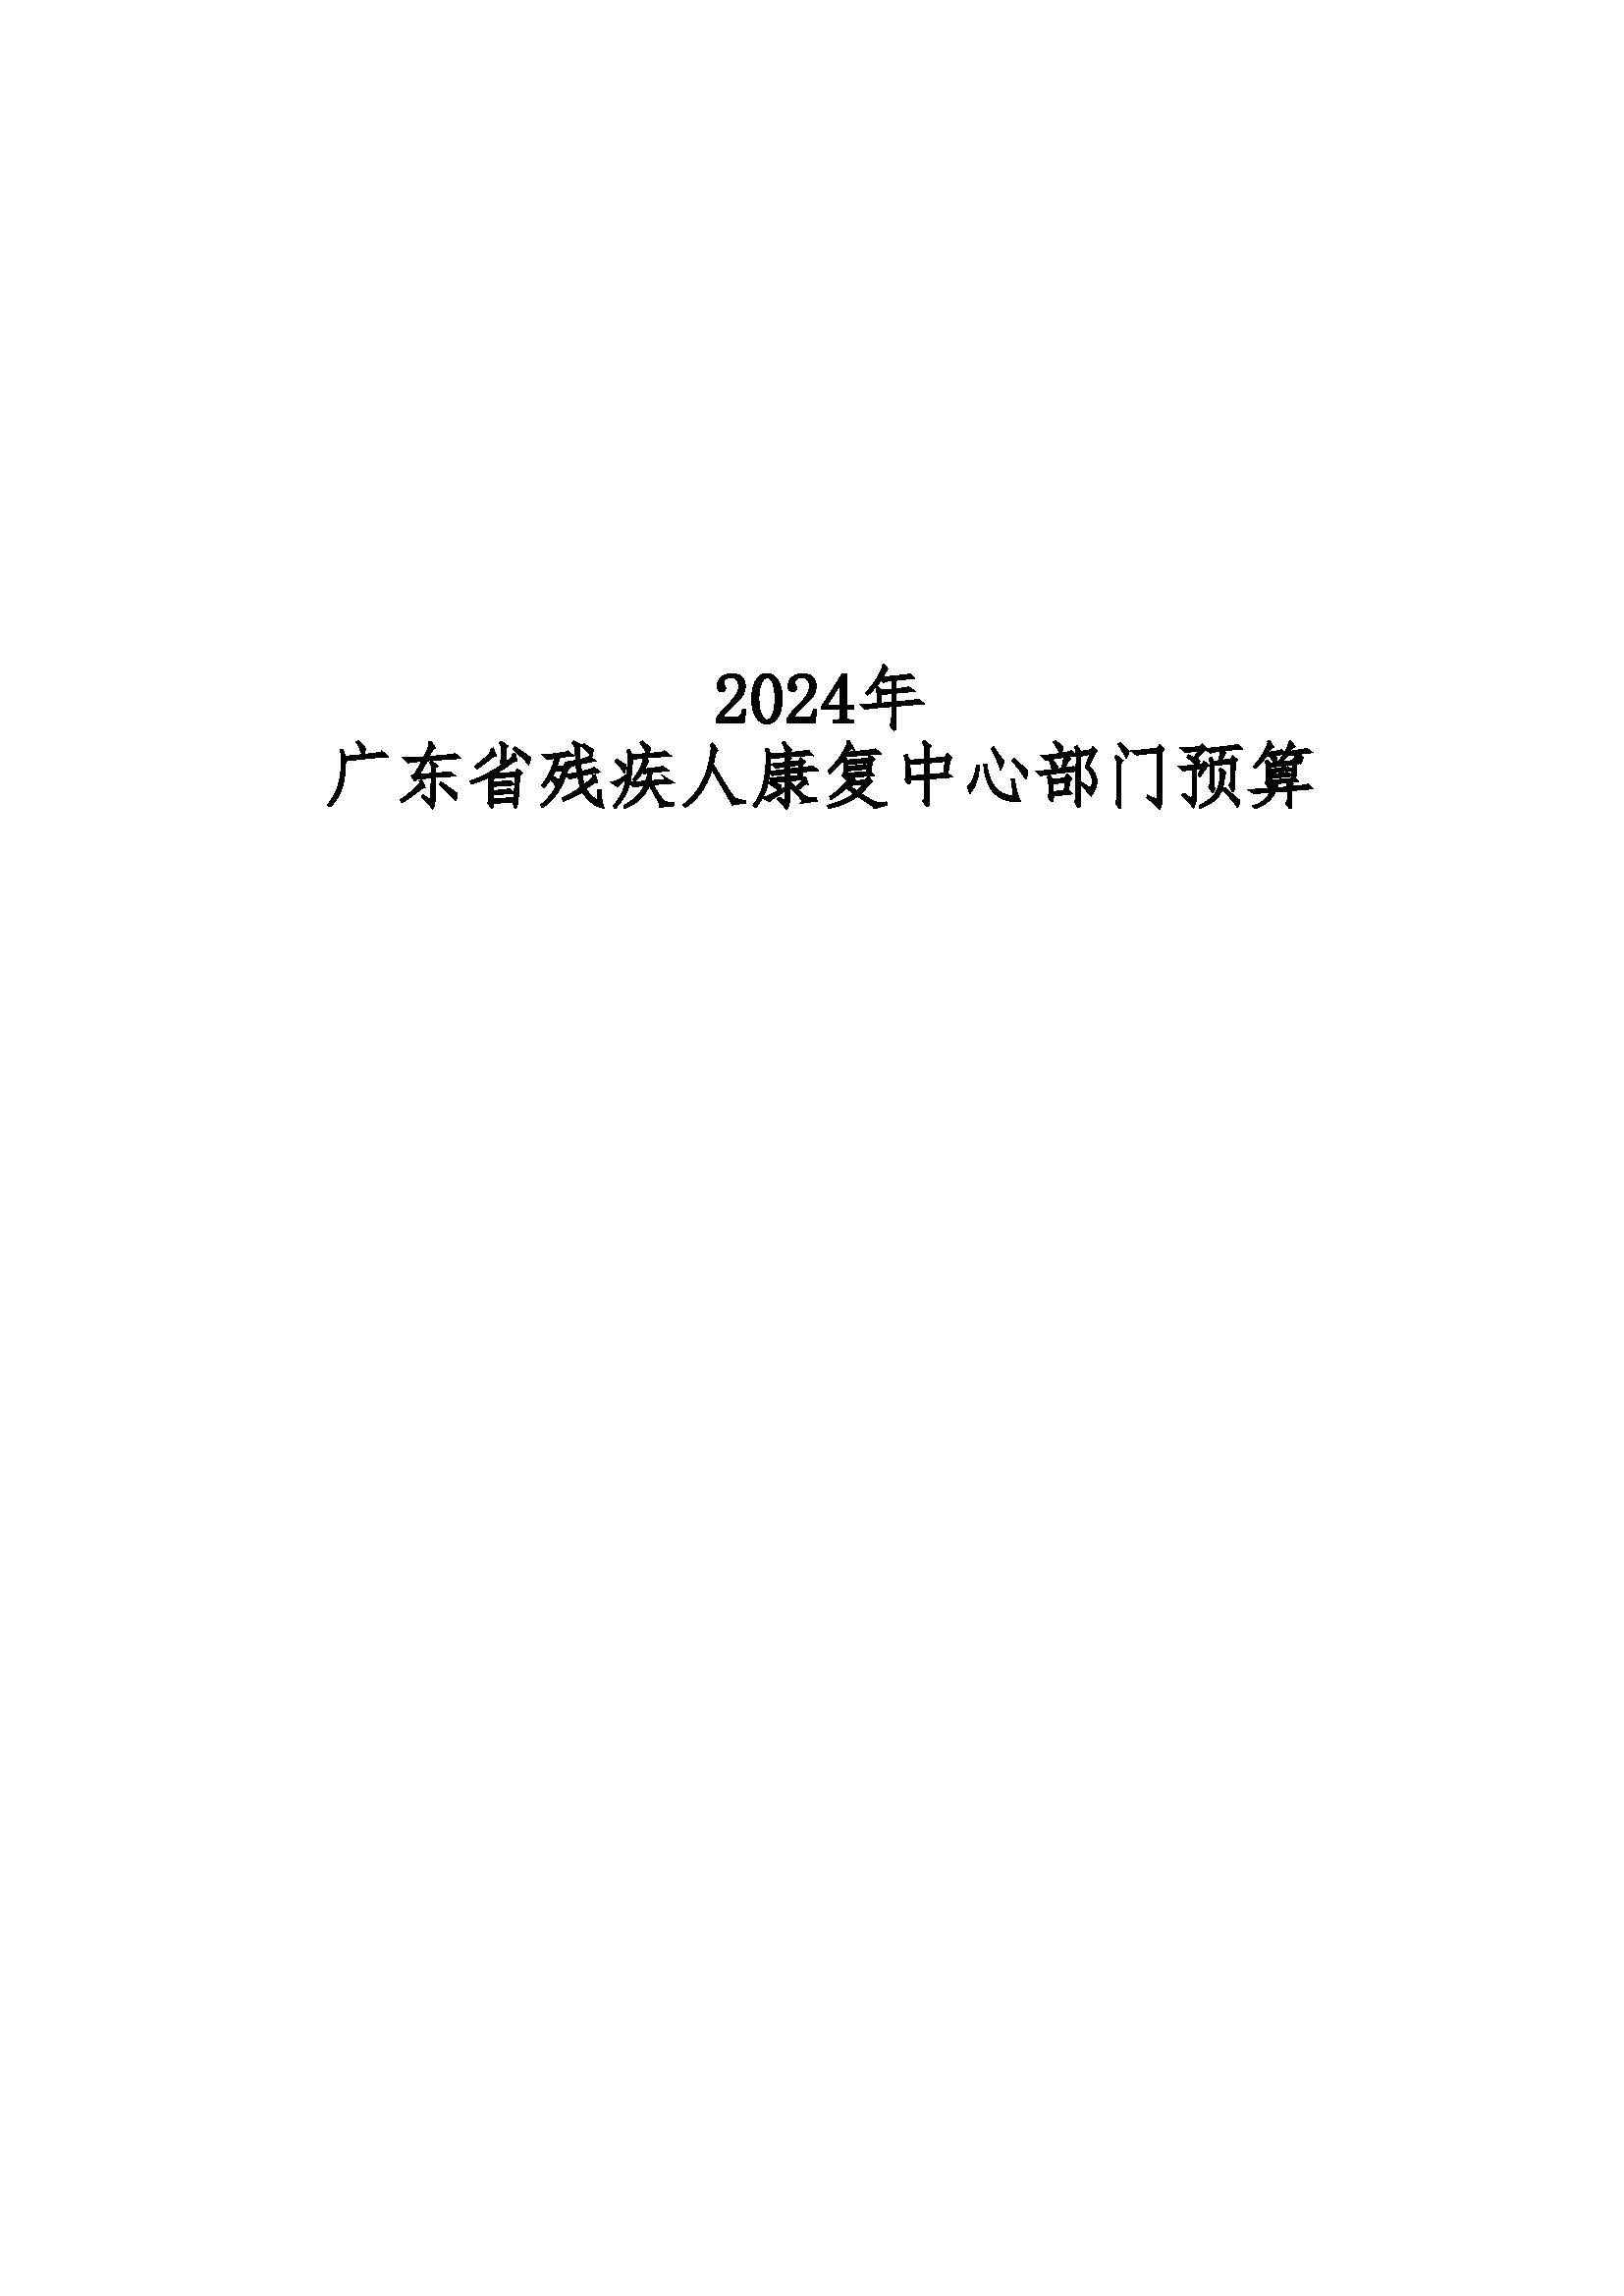 2024年广东省残疾人康复中心部门预算 _页面_01.jpg